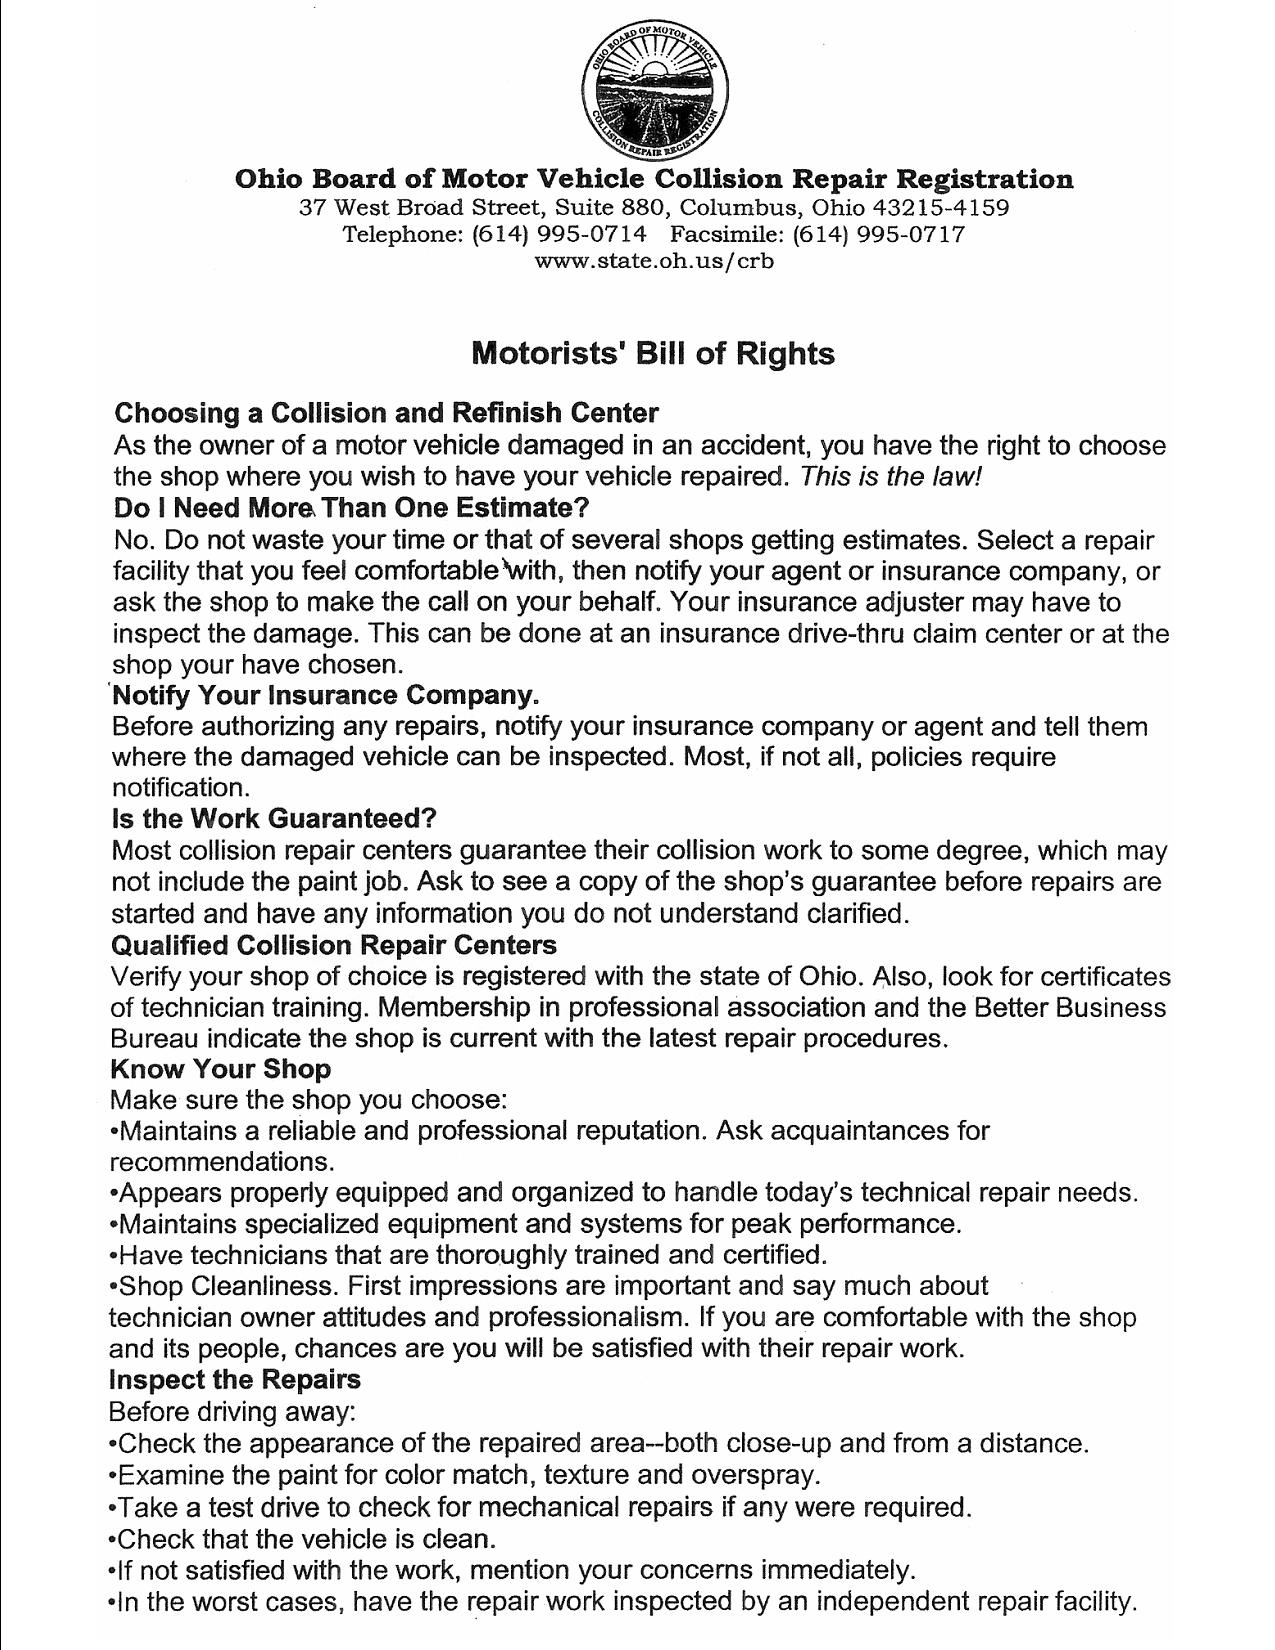 Motorist Bill of Rights